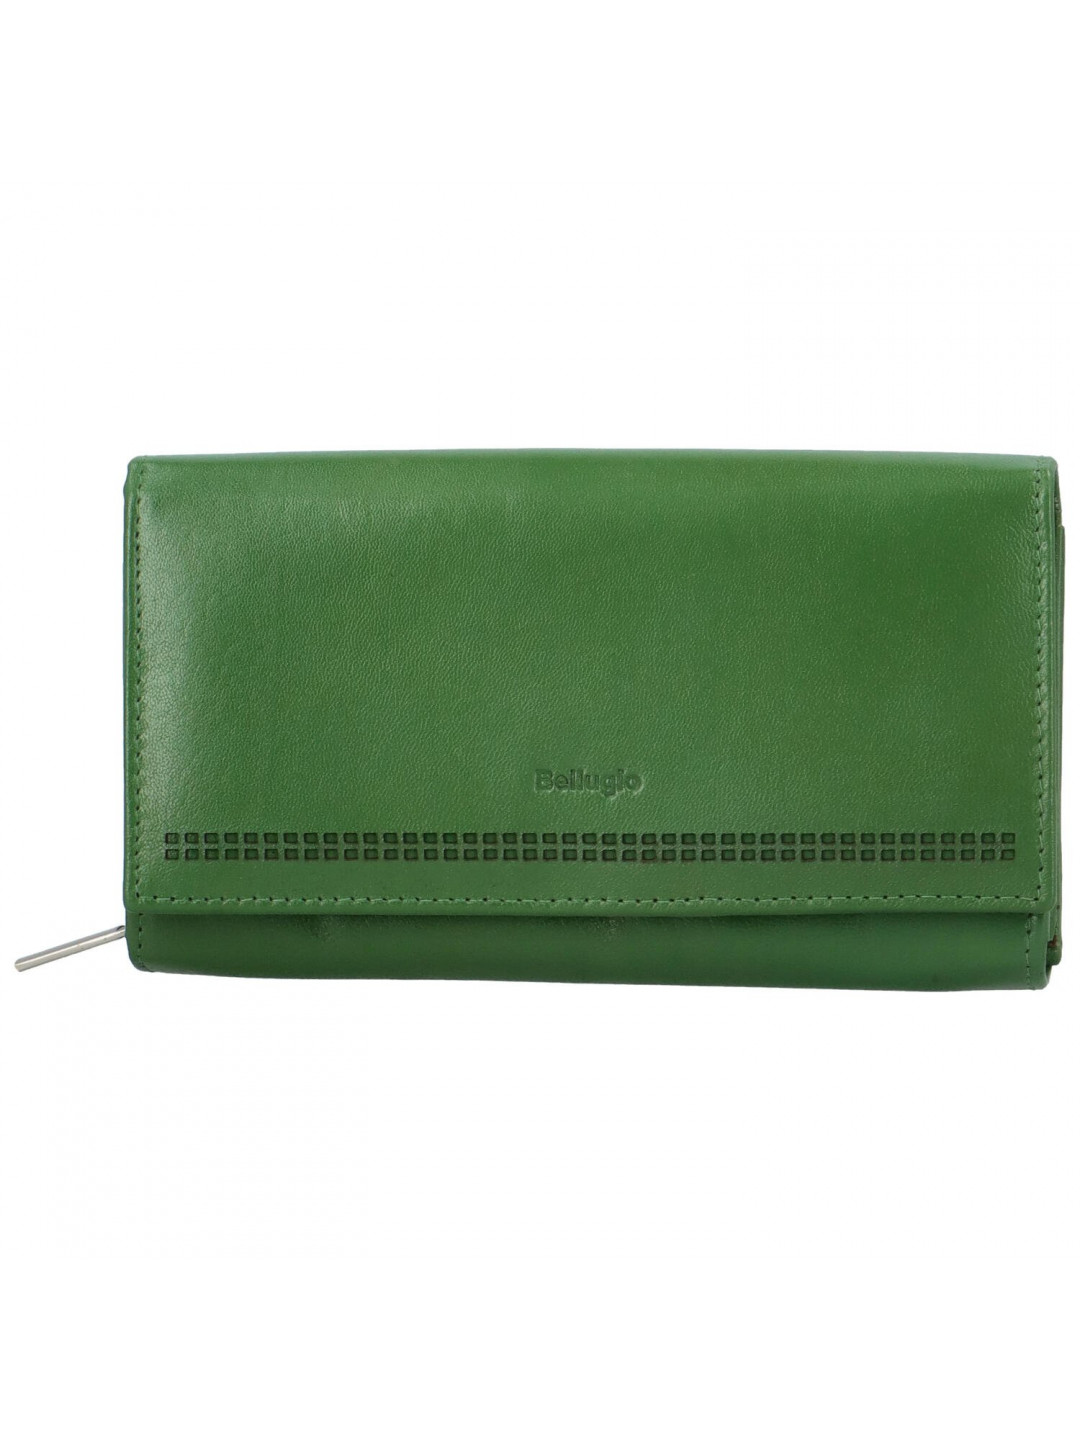 Dámská kožená peněženka zelená – Bellugio Ermína